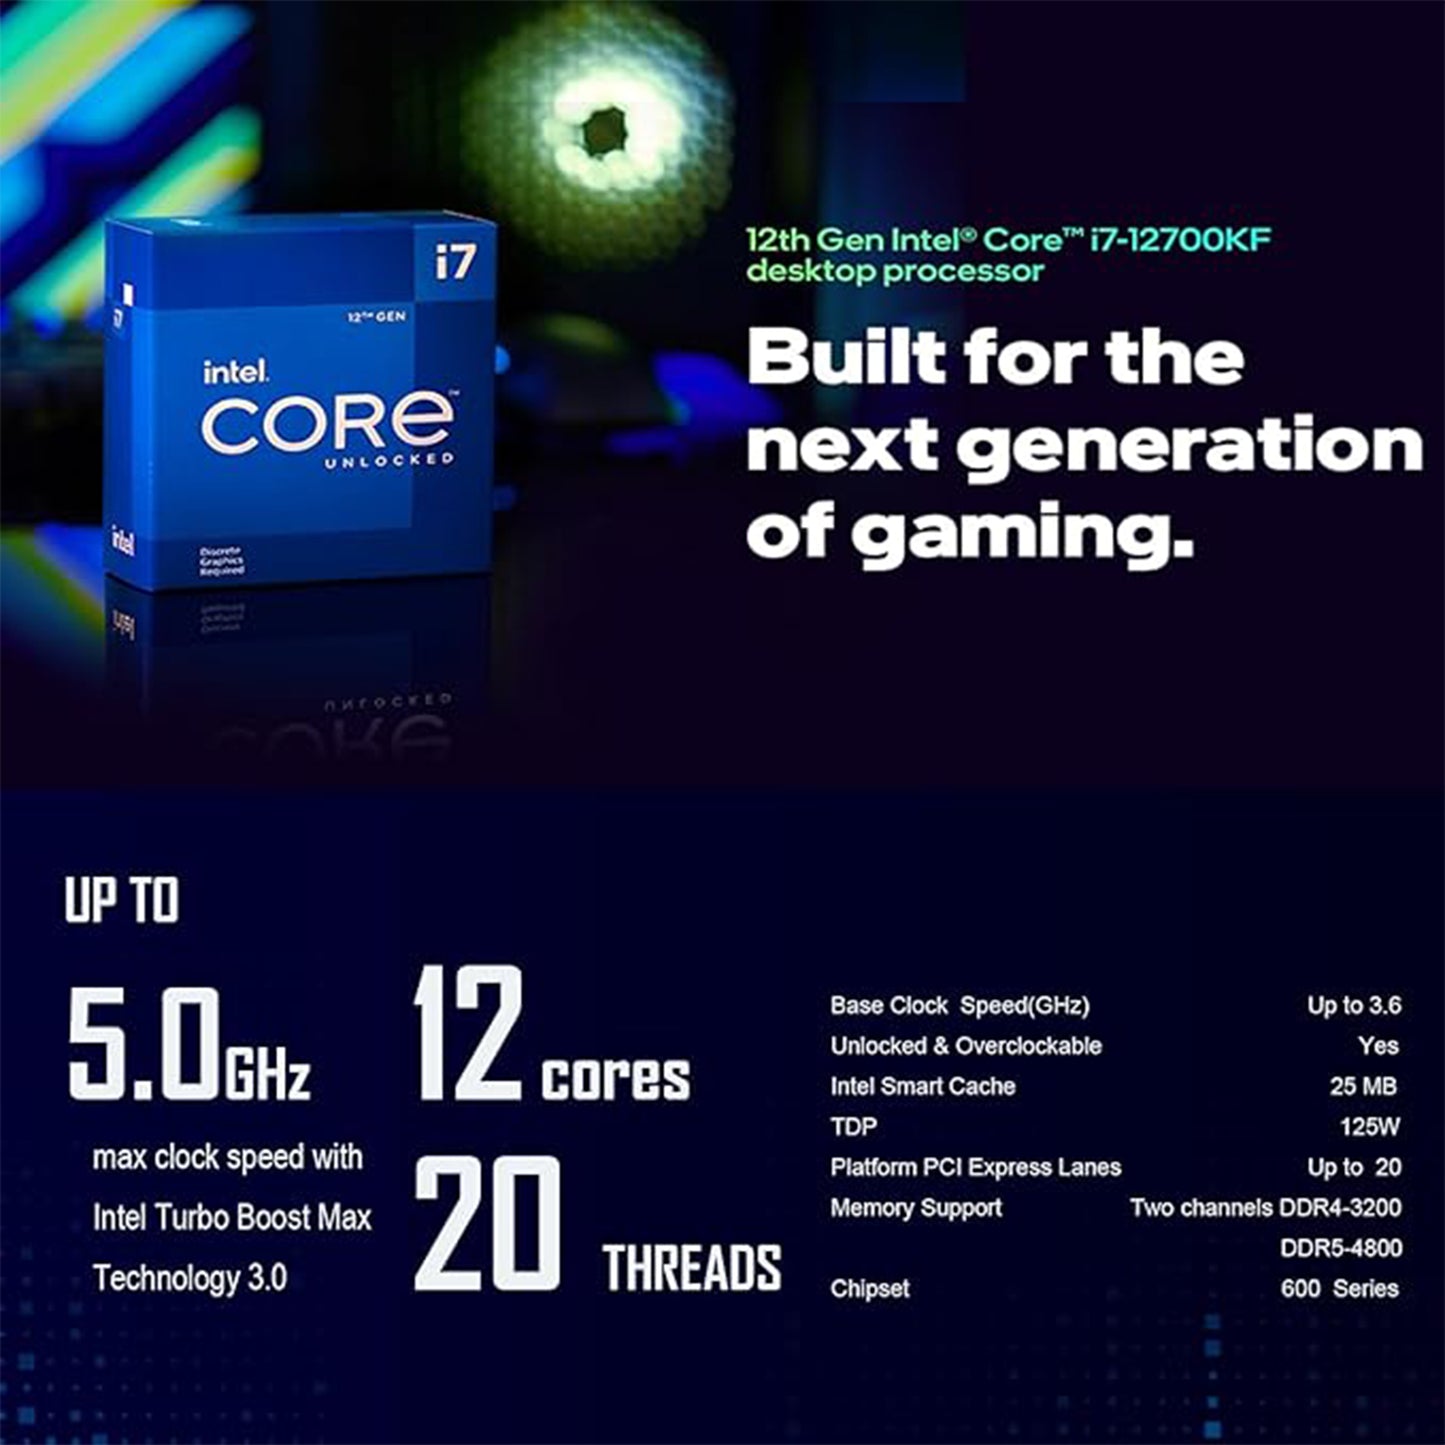 معالج سطح المكتب Intel Core i7-12700KF للألعاب من Micro Center 12 (8P+4E) نواة تصل إلى 5.0 جيجاهرتز غير مقفلة مجموعة شرائح LGA1700 600 بقوة 125 وات مع اللوحة الأم ASUS Prime Z690-A ATX للألعاب 